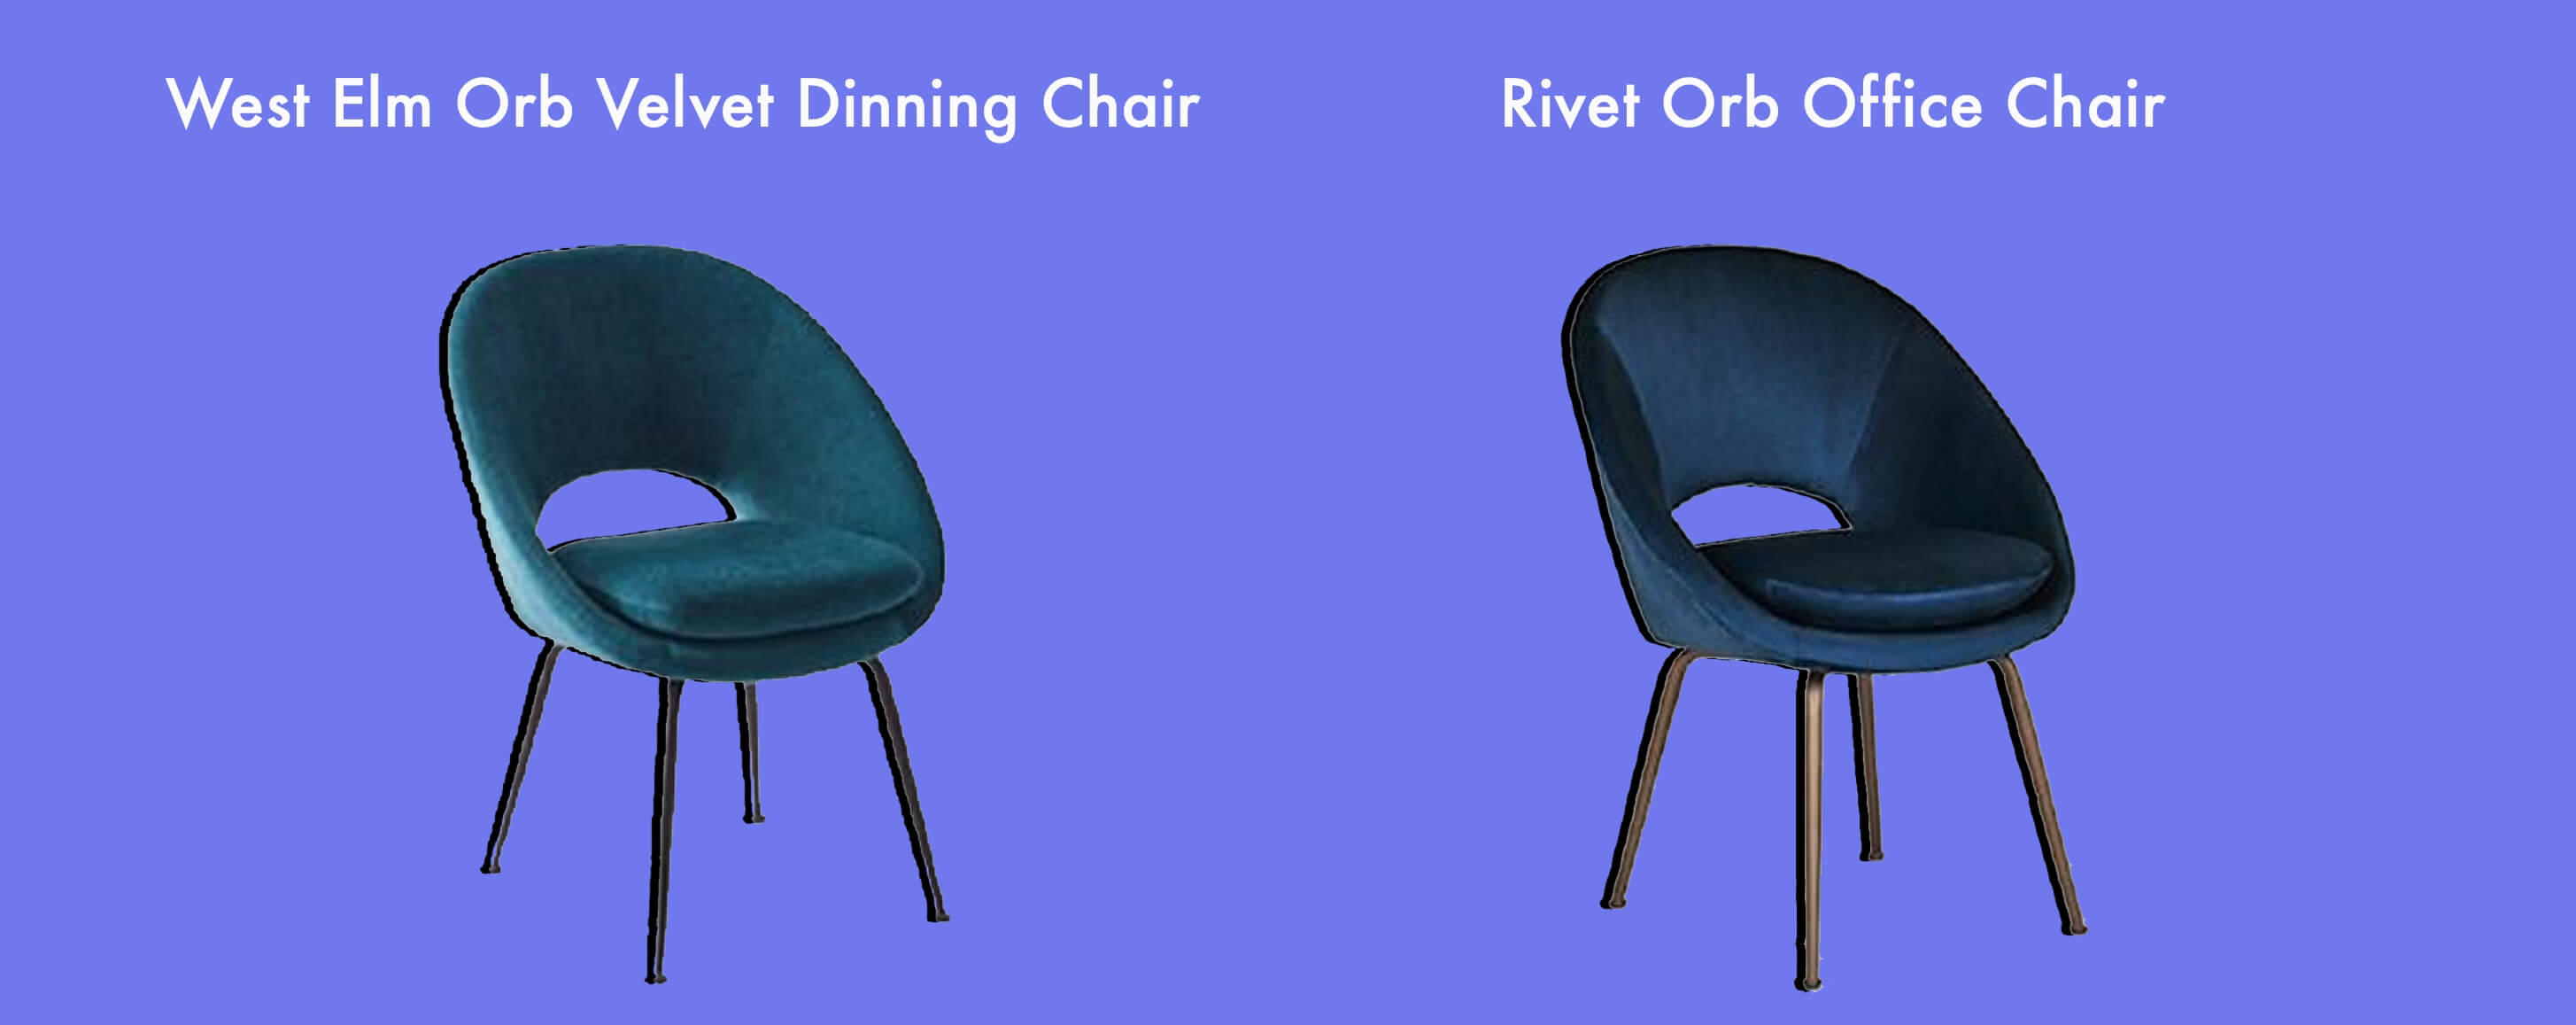 West Elm Orb Velvet Dinning Chair vs Rivet Orb Office Chair